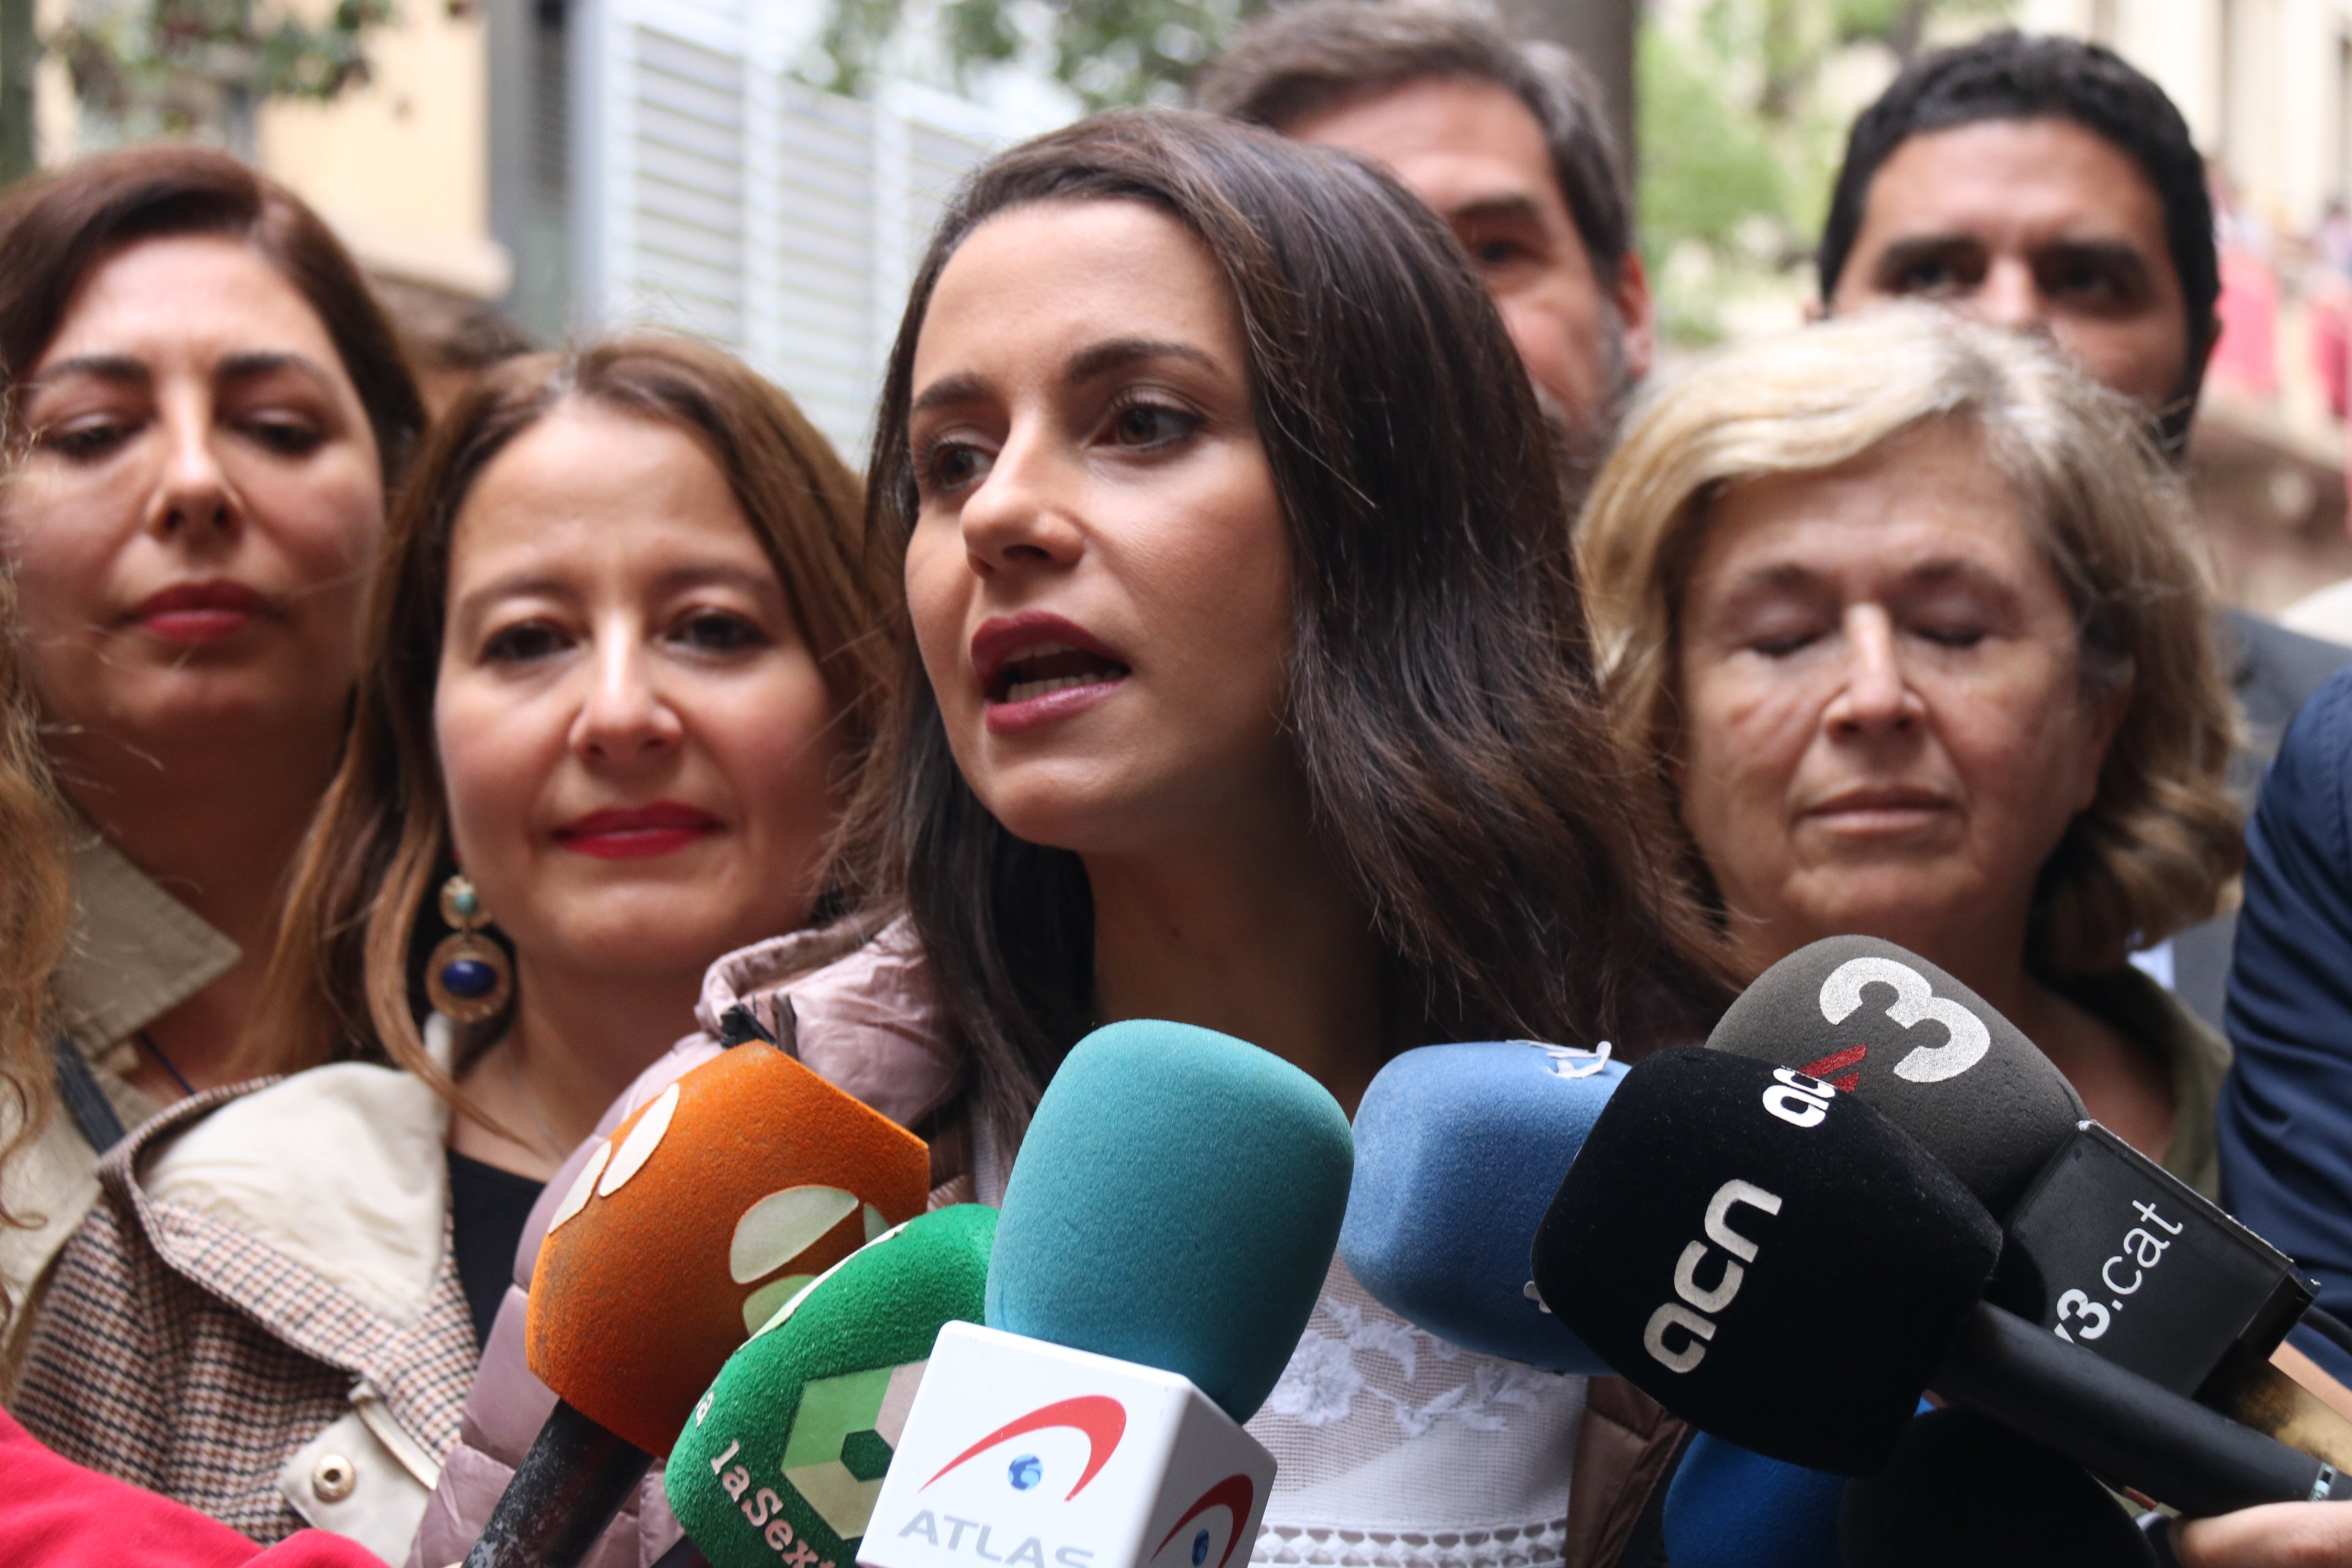 VIDEO | Inés Arrimadas jeered on visit to neighbourhood 'festa major' in Barcelona